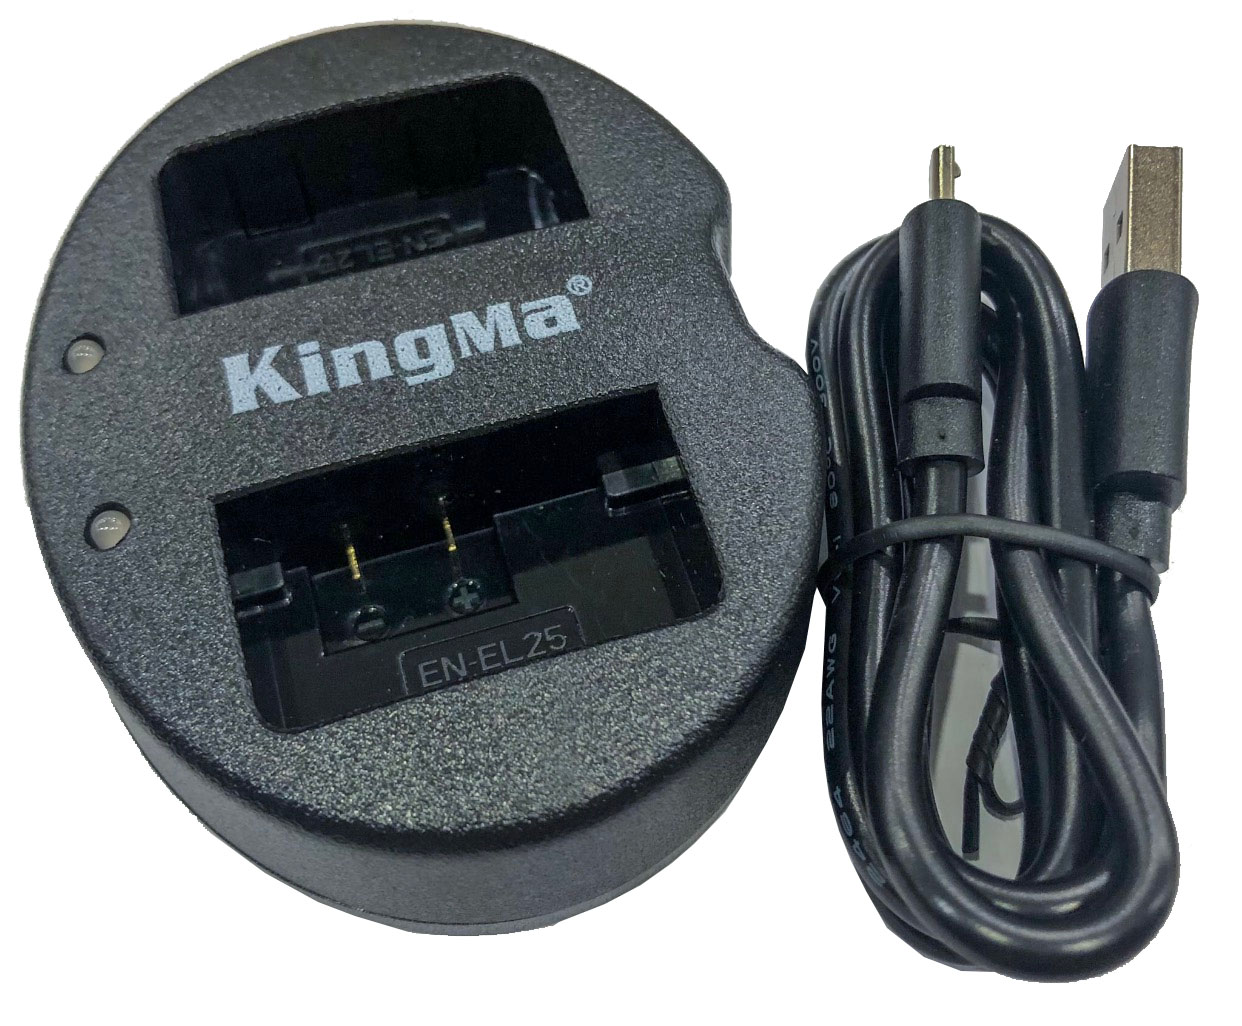 Pin sạc Kingma cho Nikon EN-EL25, Hàng chính hãng